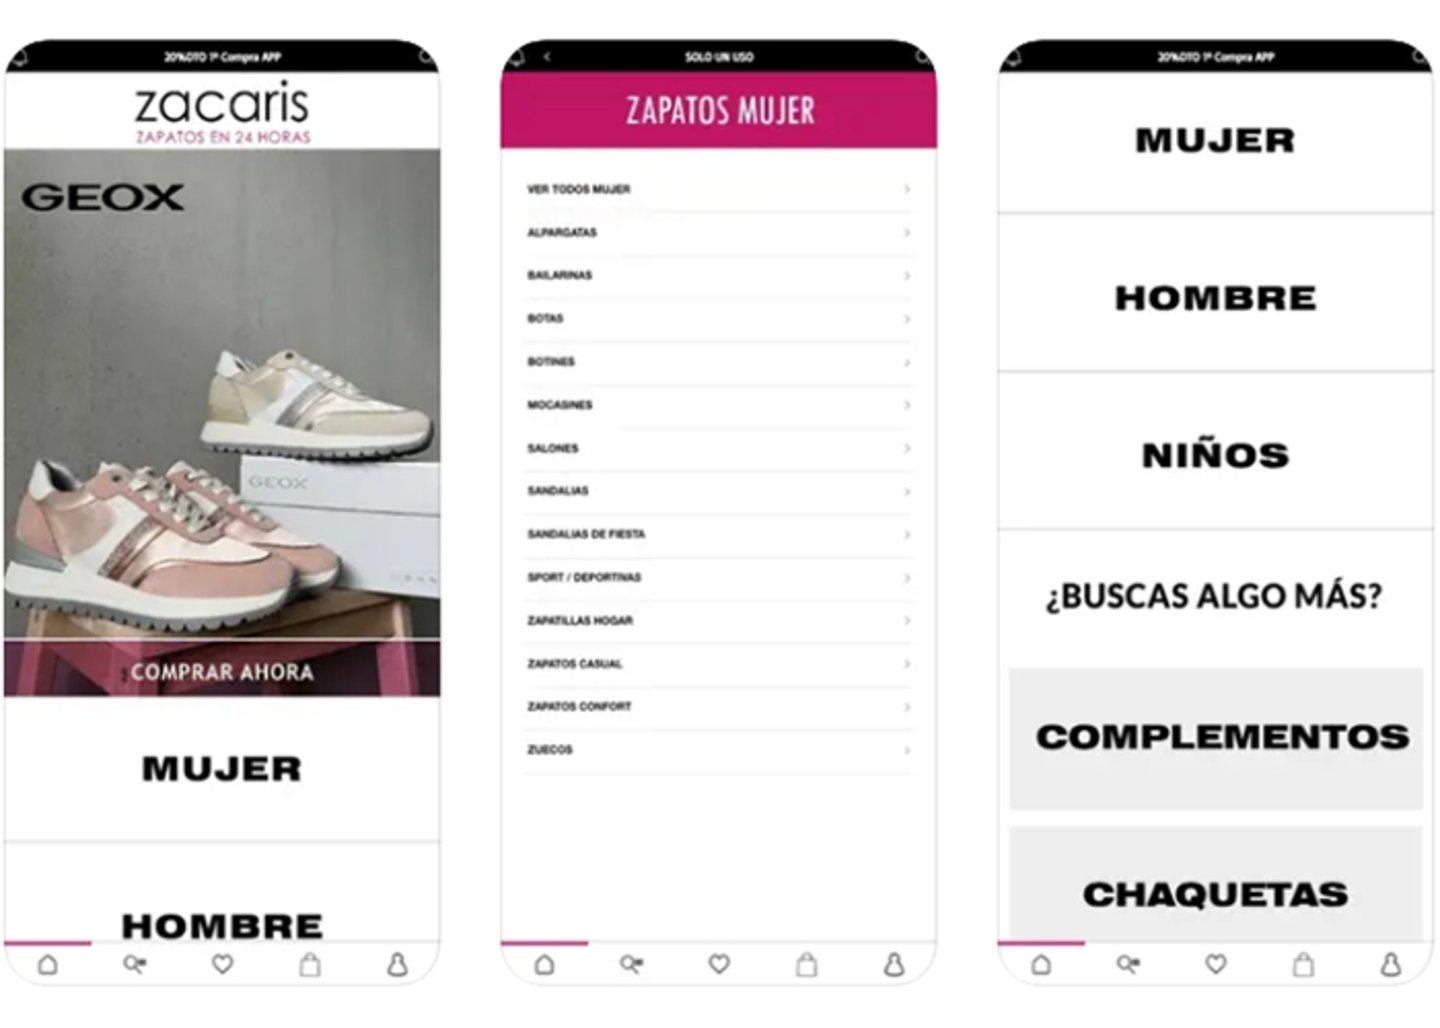 Eleva tu estilo con Zacaris - zapatos online para cada ocasion